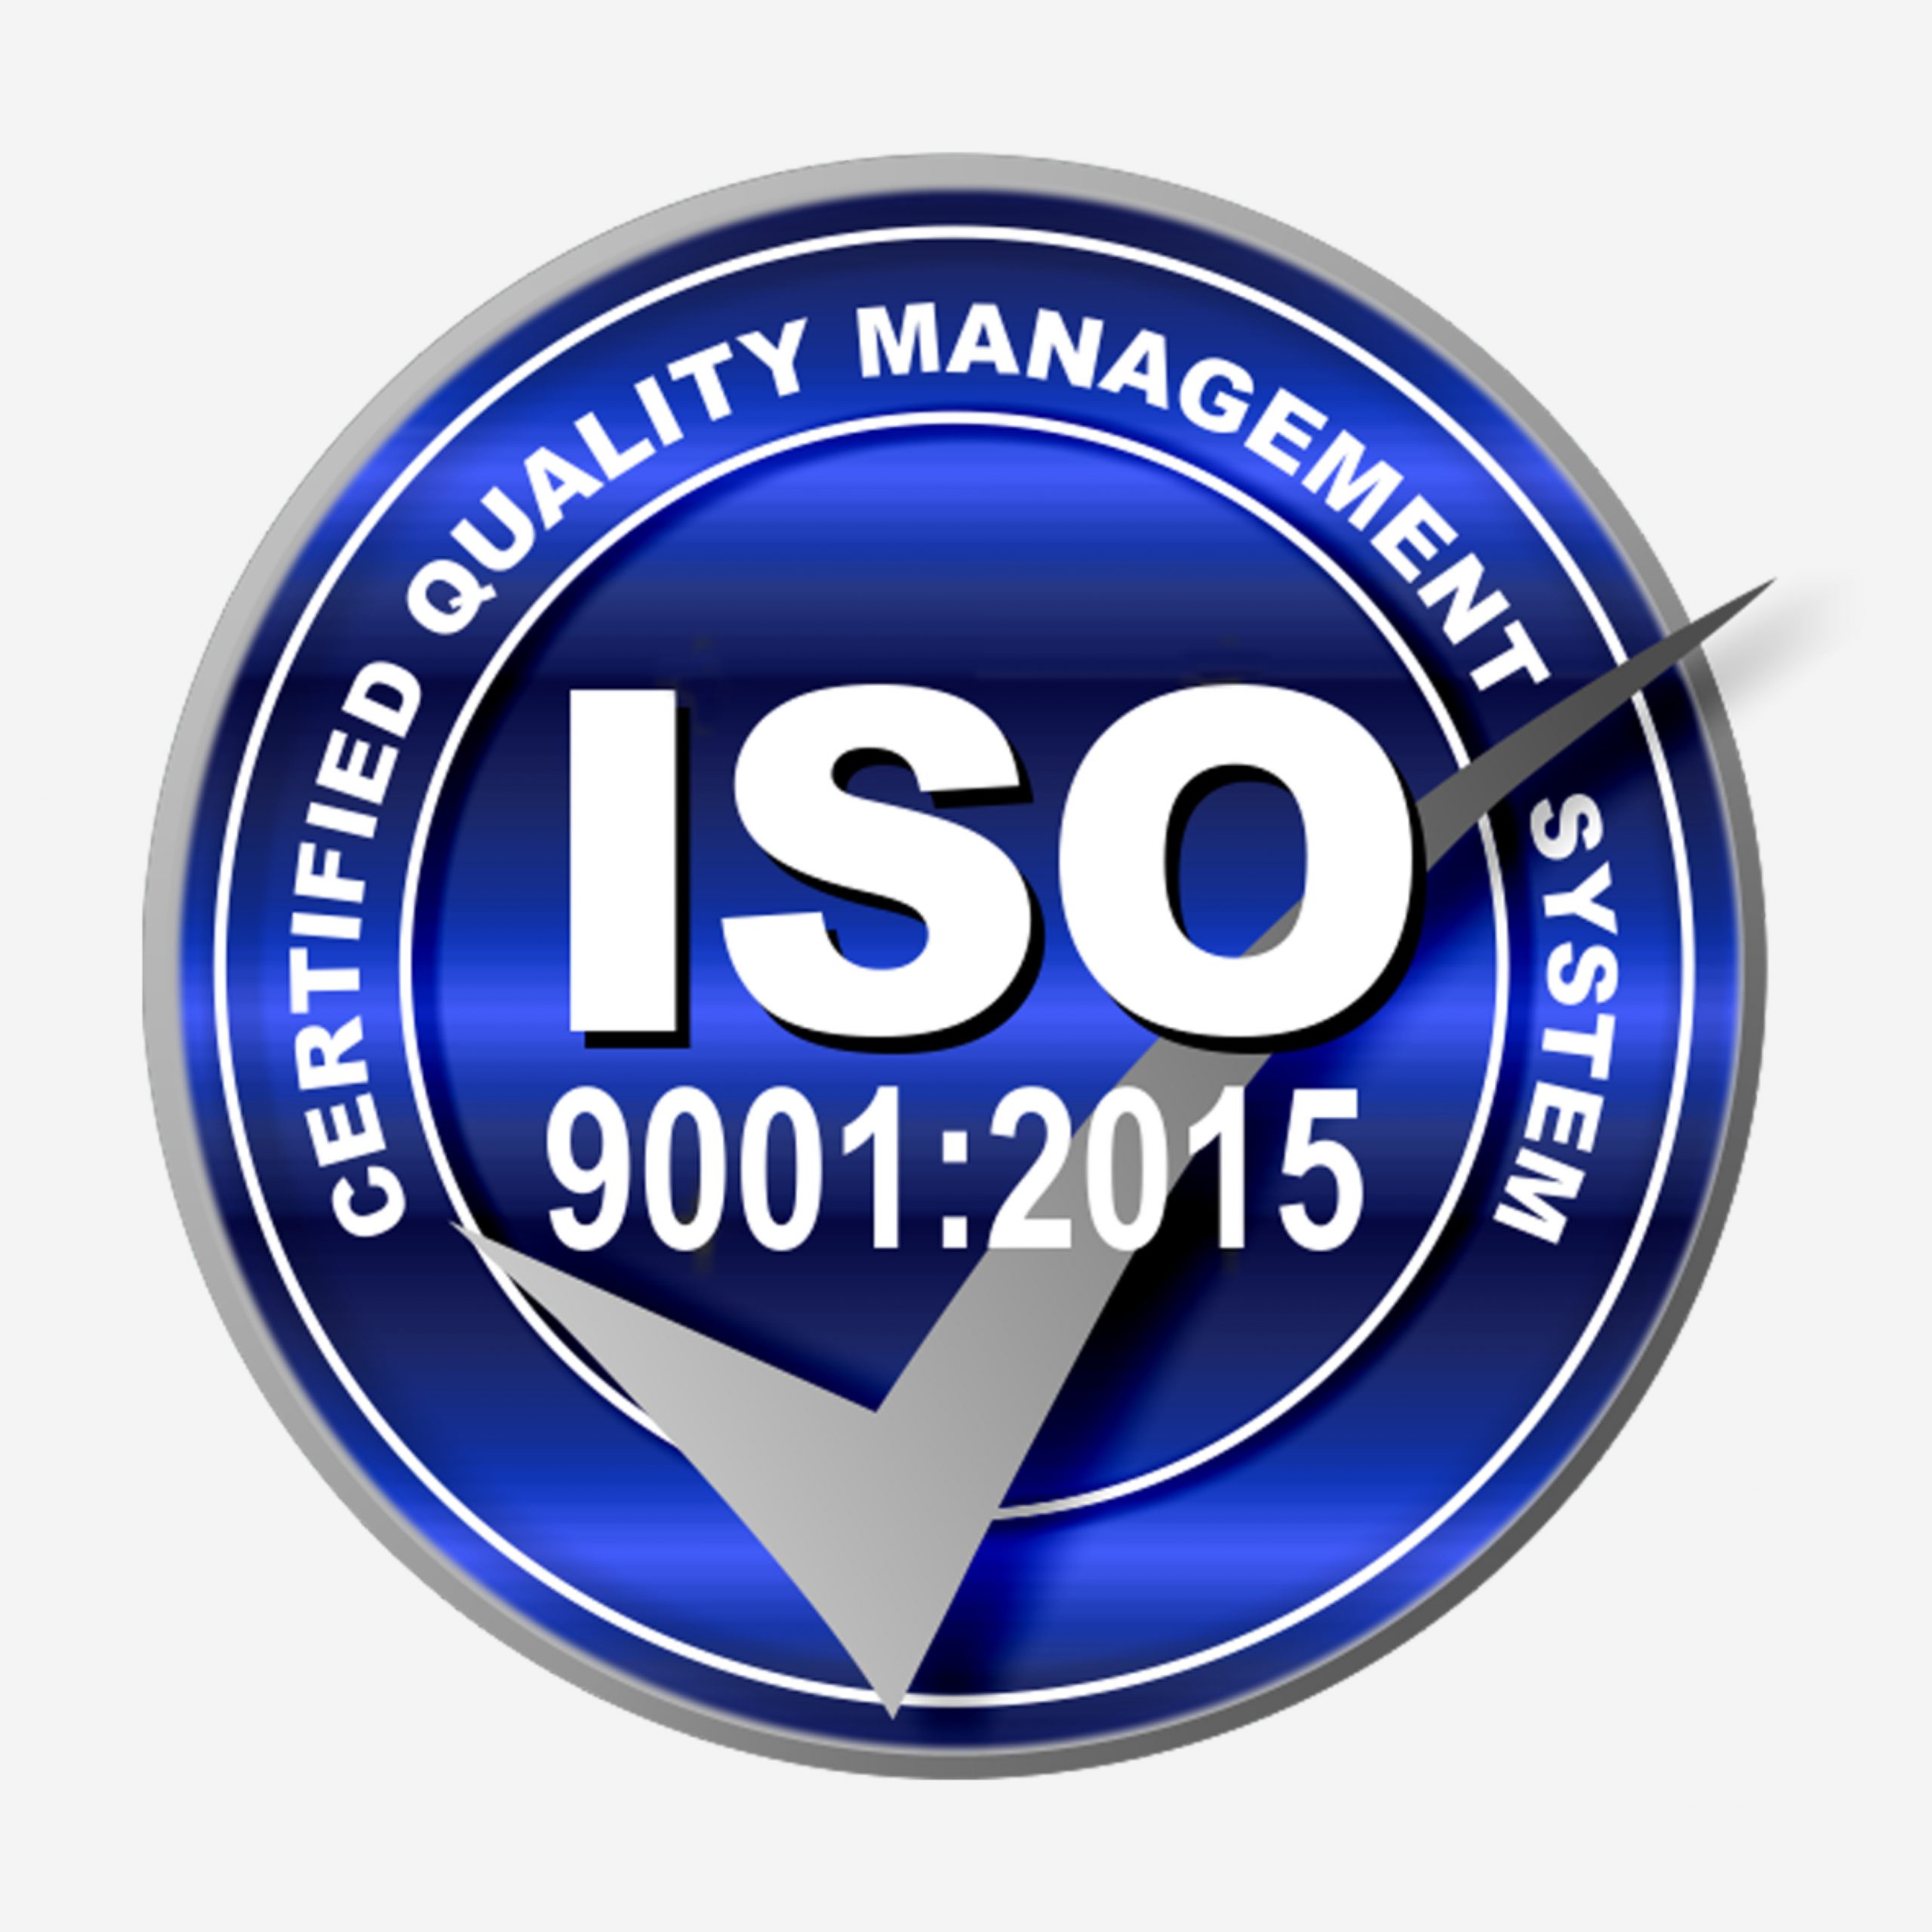 Стандарт качества iso 9001 2015. Сертификат ISO 9001:2015 лого. Международный стандарт качества ISO 9001. ISO 9000 логотип. Стандарт ИСО 9001 2015.